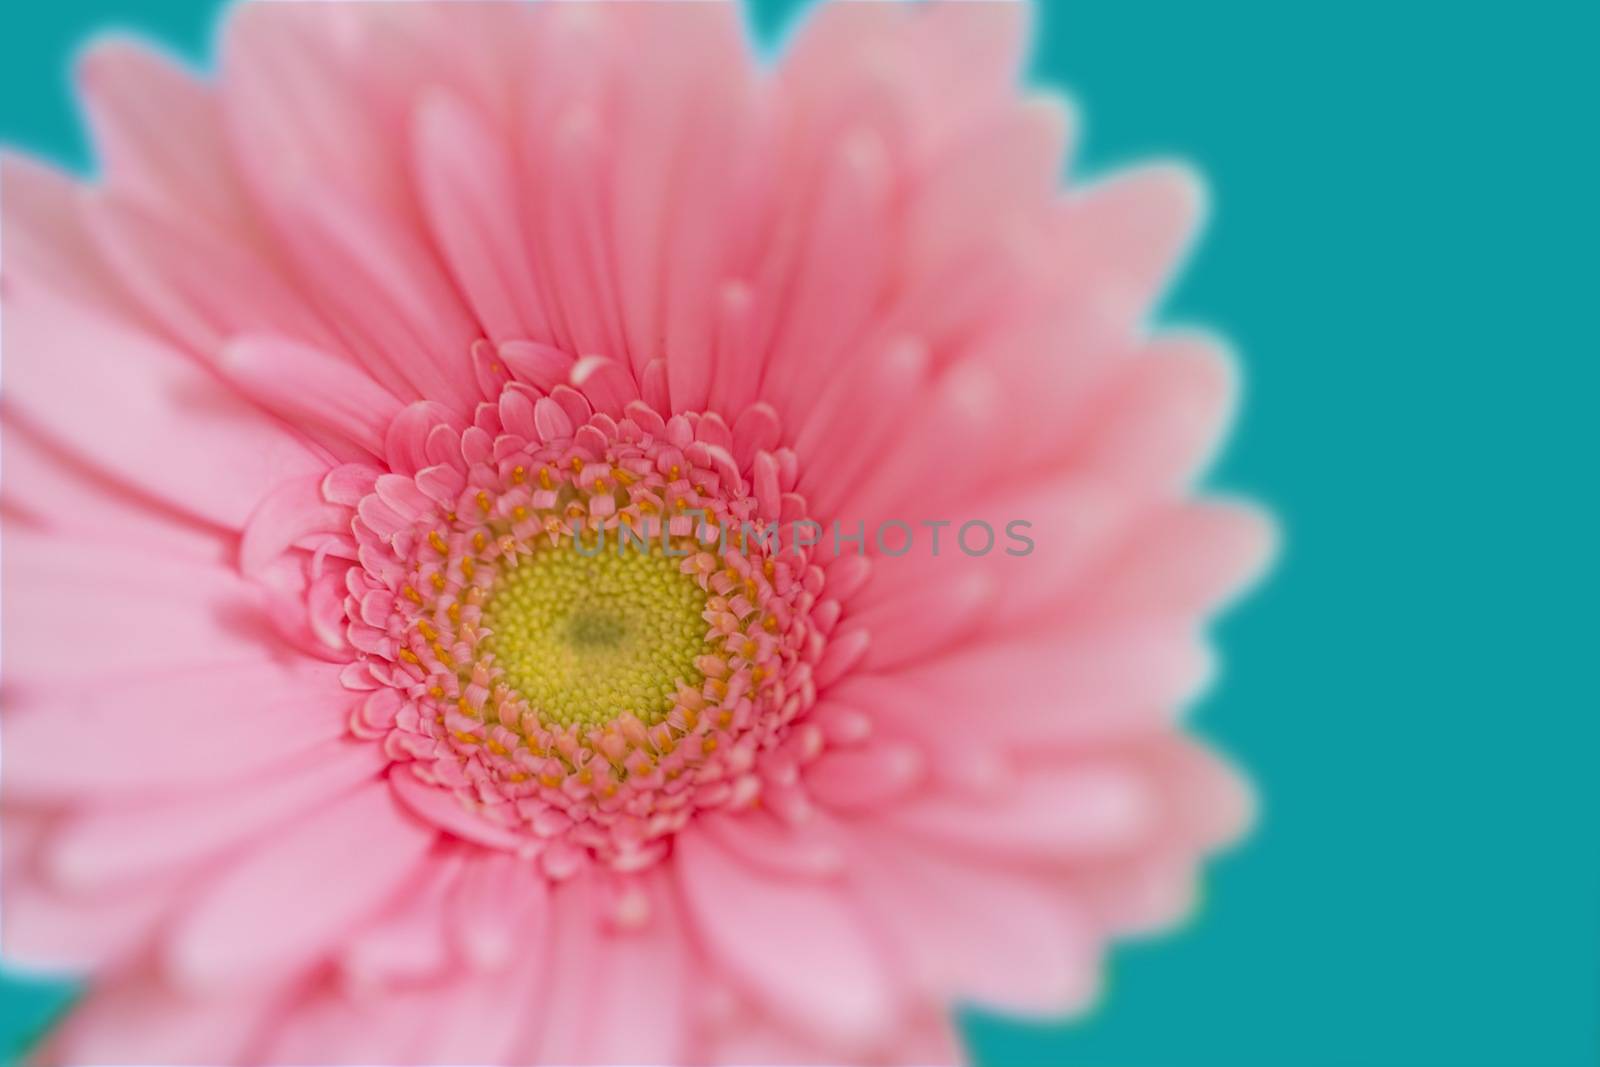 Pink flower by Onigiristudio